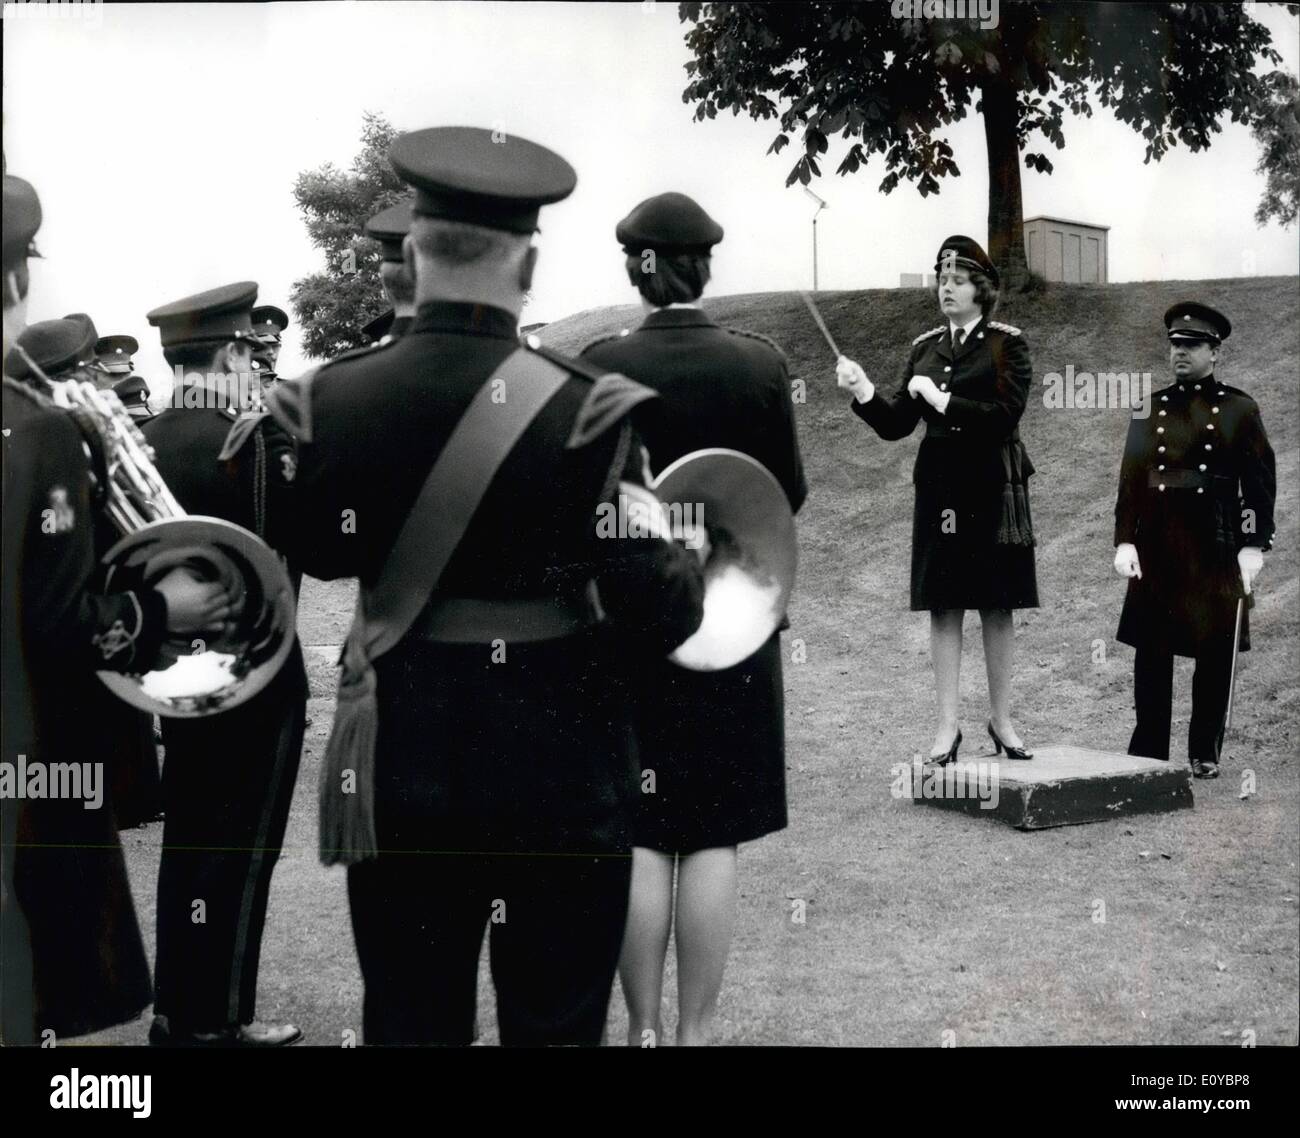 08 août 1969 - Mari et femme joignent leurs forces sur la tribune : deux bandes et deux conducteurs fournissant un mariage harmonieux sur la place à la caserne de W.R.A.C. Stoughton, près de Guildford, Surrey, hier. Bowness-Smith Capt Zara, 26 ans, a effectué une répétition pour un concert à Guildford hier soir donné par l'ensemble des bandes de la W.L.C.E.C., dont il est directeur de la musique, et le 3e Bataillon du Royal Anglian Regt., dont le chef, M. Robert Bowness-Smith, se tenait près de prendre le flambeau Banque D'Images